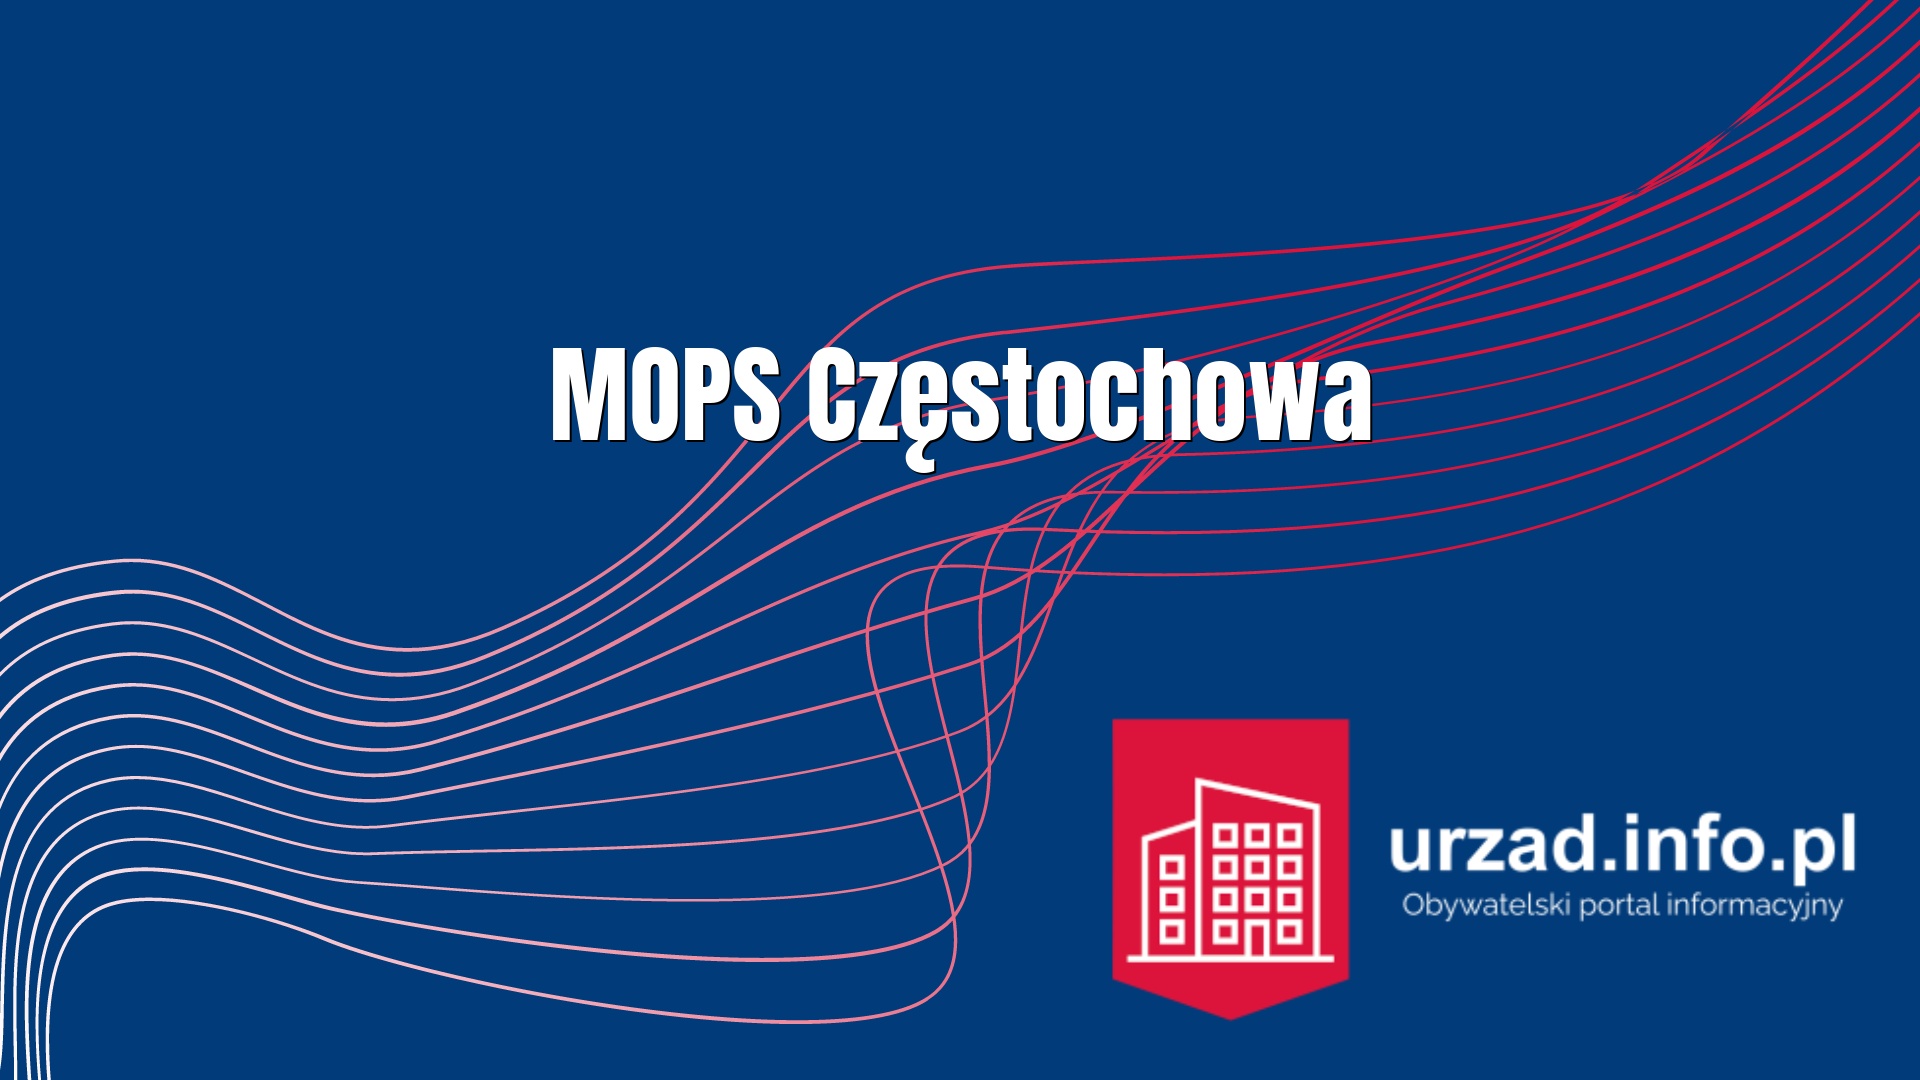 MOPS Częstochowa – Miejski Ośrodek Pomocy Społecznej w Częstochowie